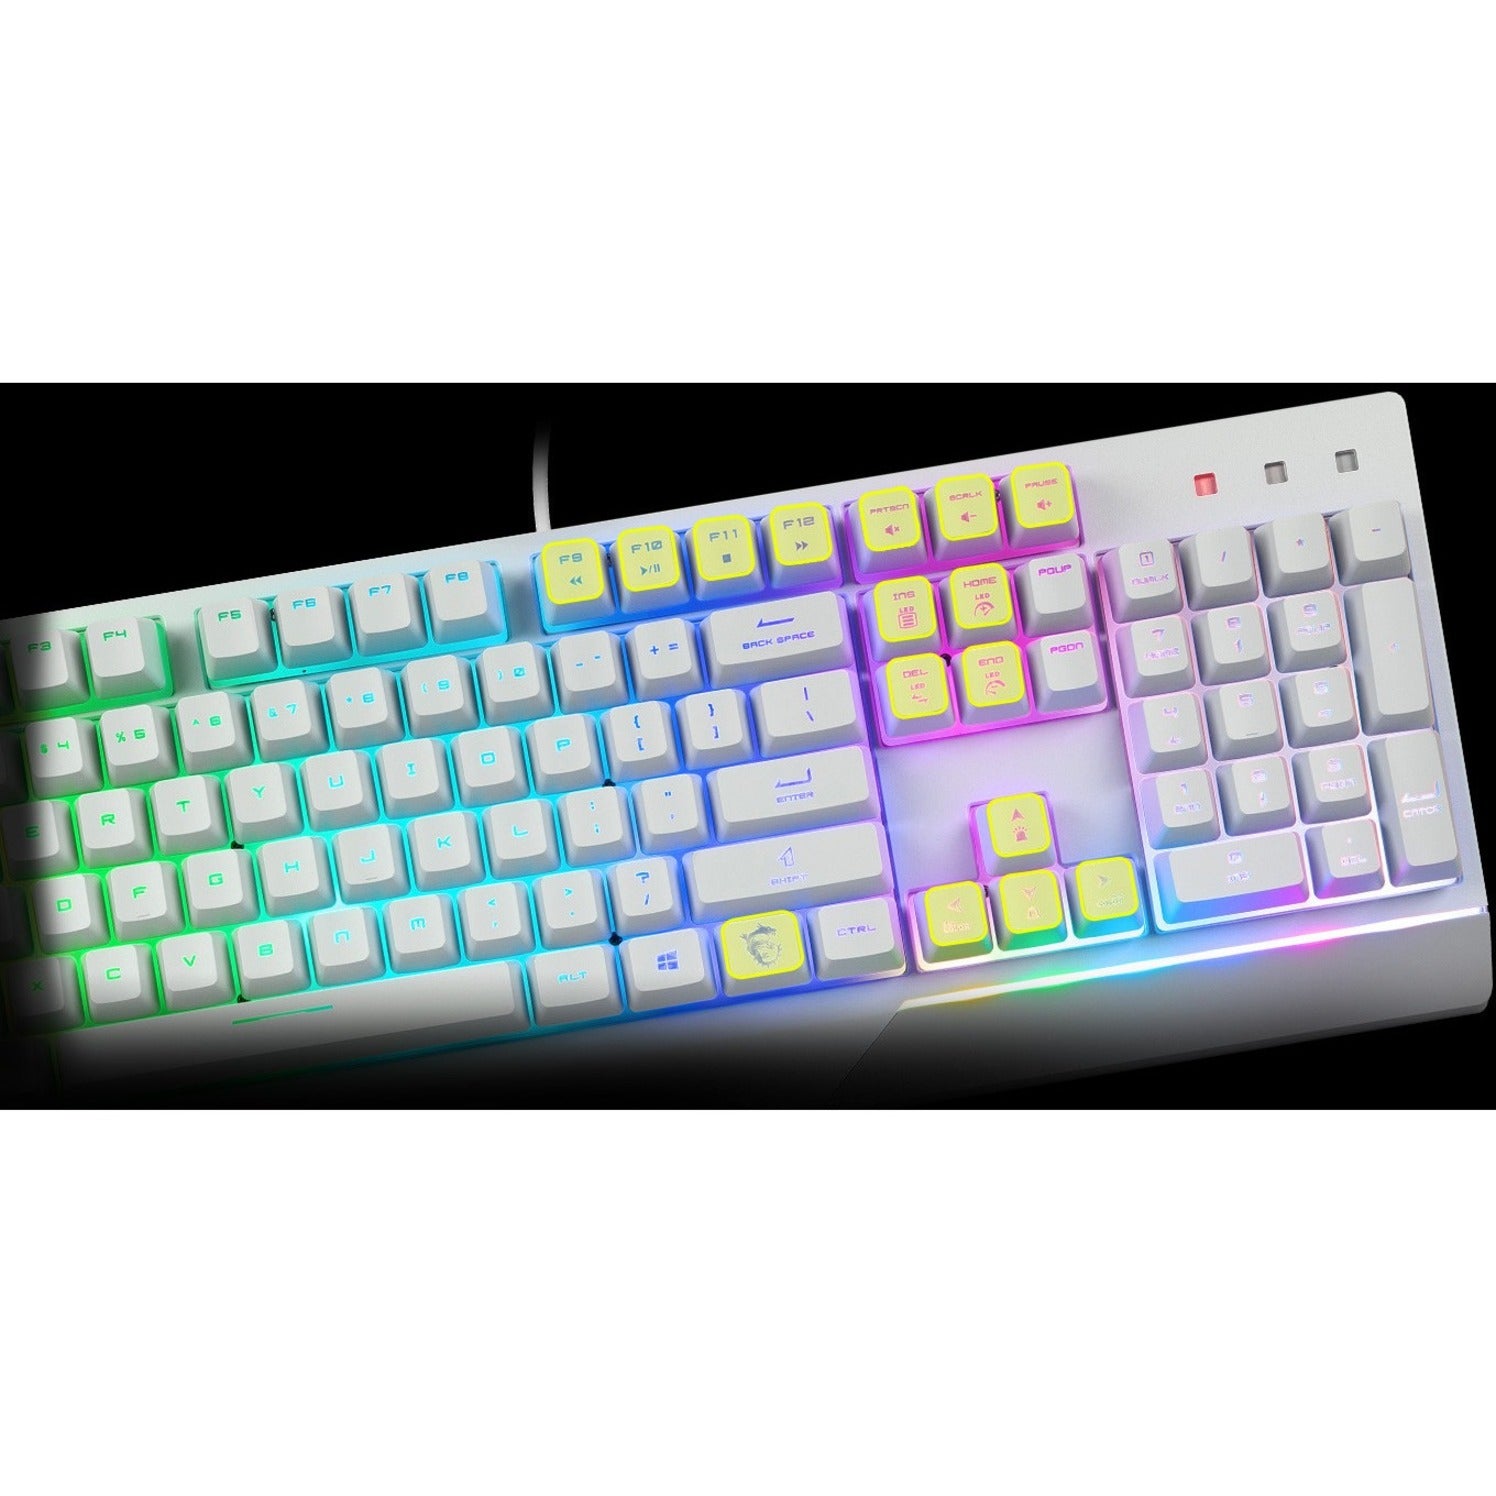 MSI VIGORGK30CW Vigor GK30 White Gaming Keyboard, Backlit, Anti-ghosting, RGB Lighting, Water Resistant